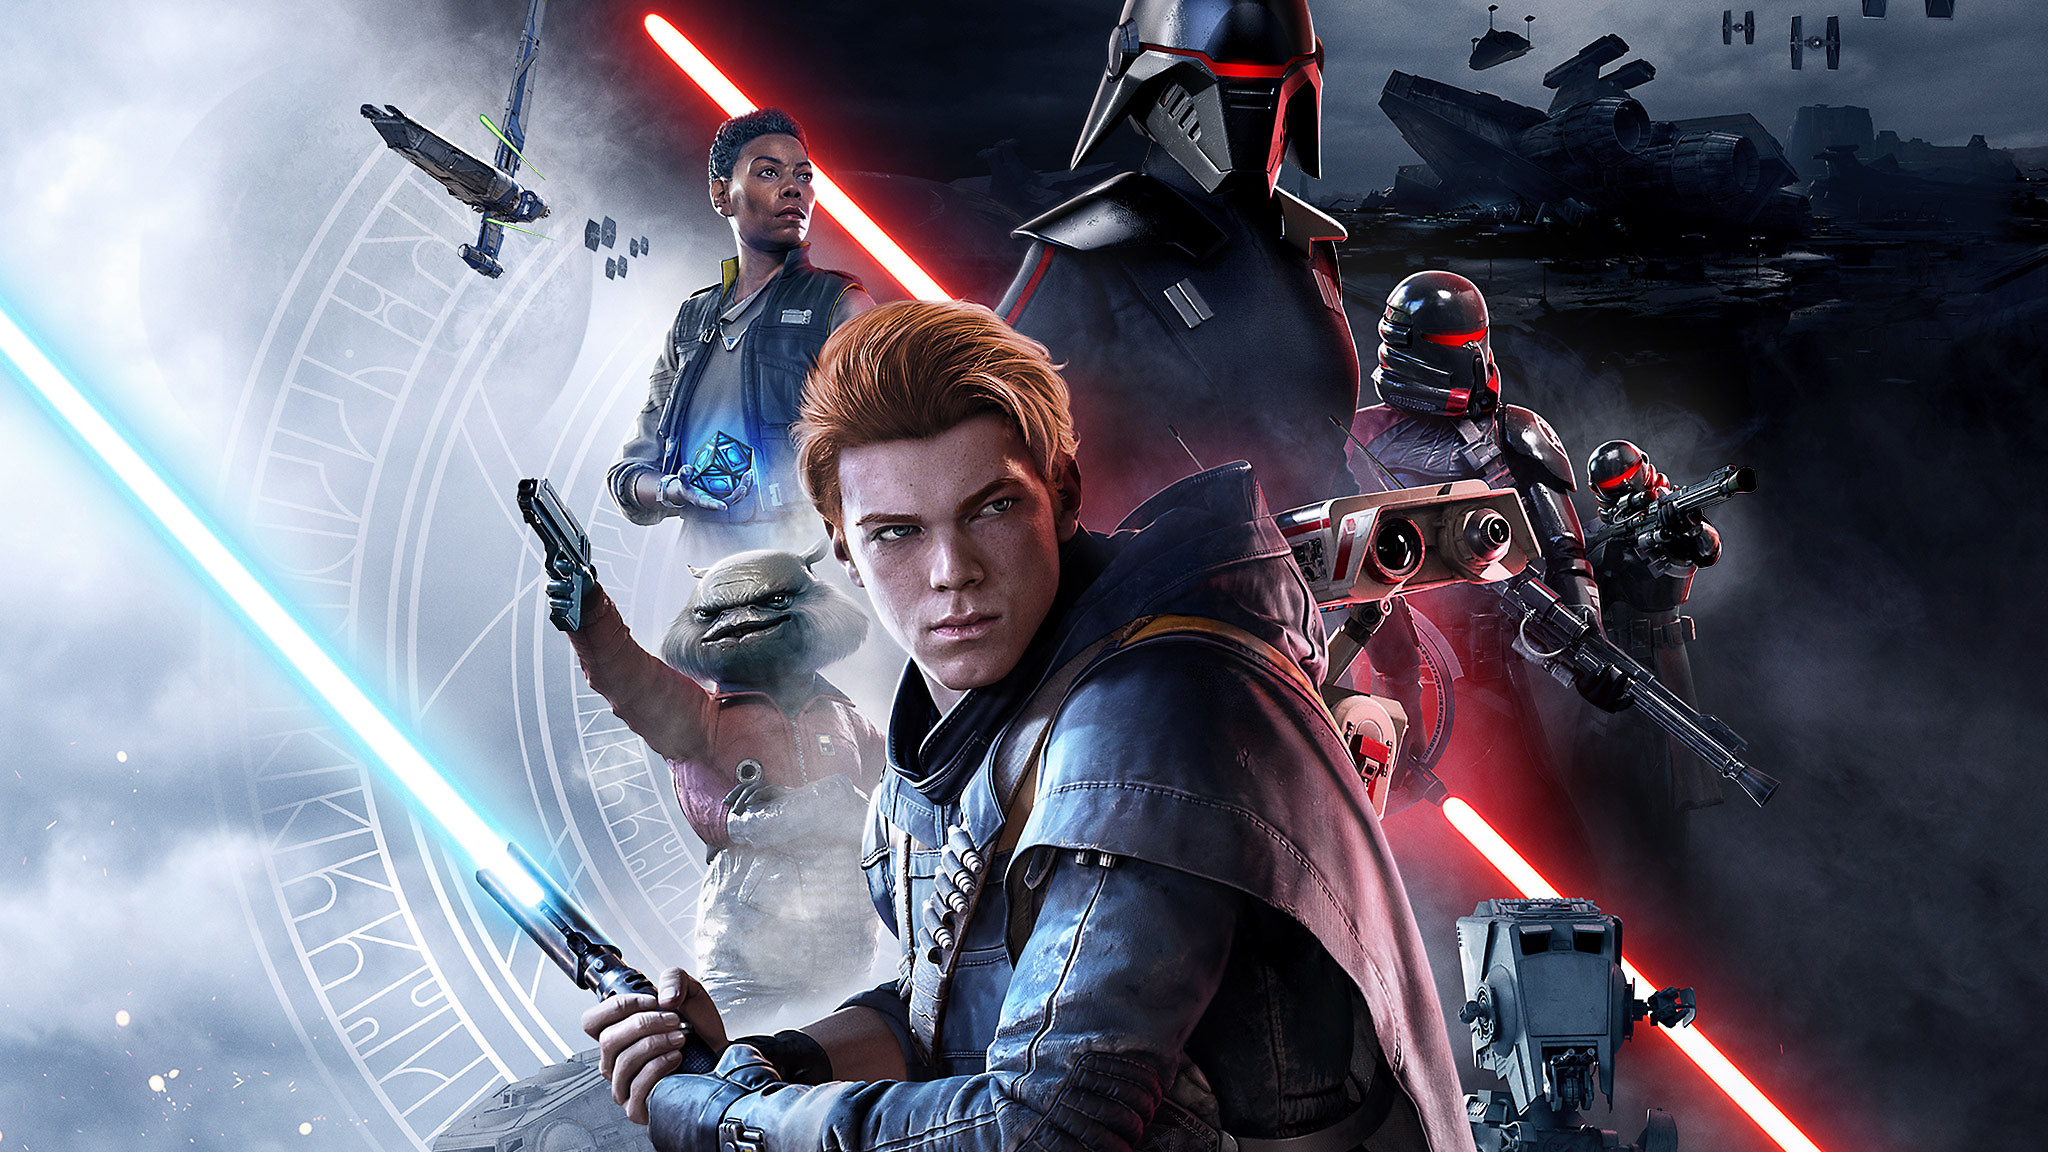 2019 Star Wars Jedi Fallen Order - Star Wars Jedi Fallen Order , HD Wallpaper & Backgrounds